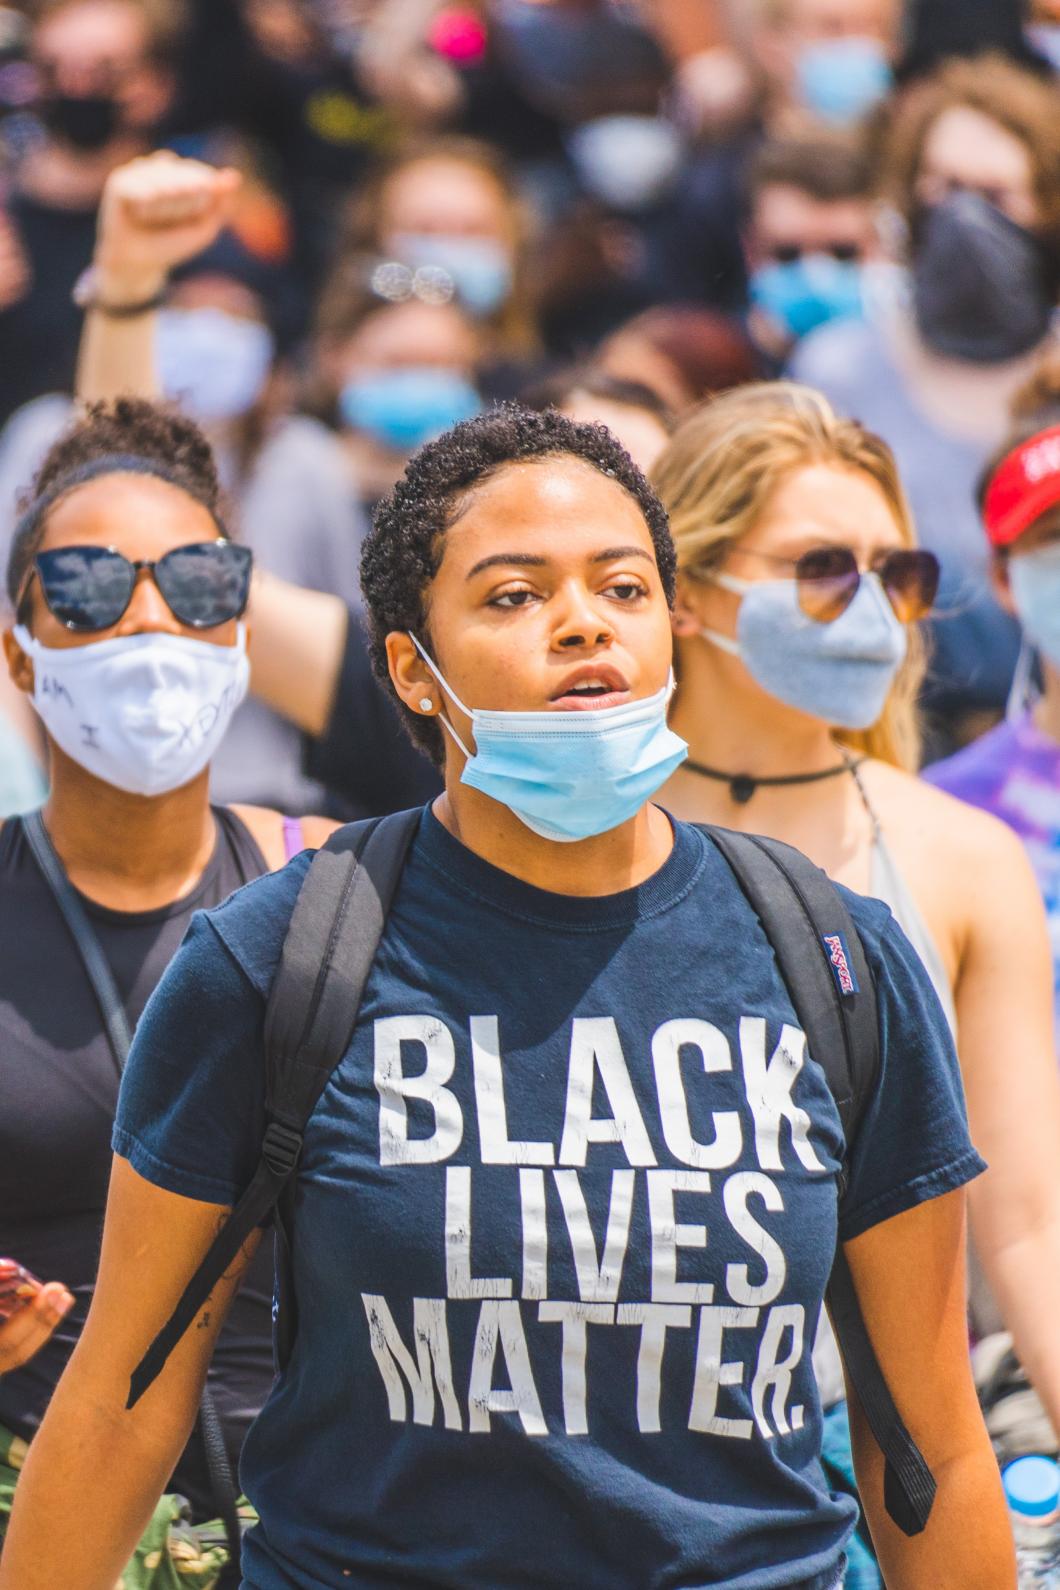 Groep demonstranten tijdens een protest voor Black Lives Matter